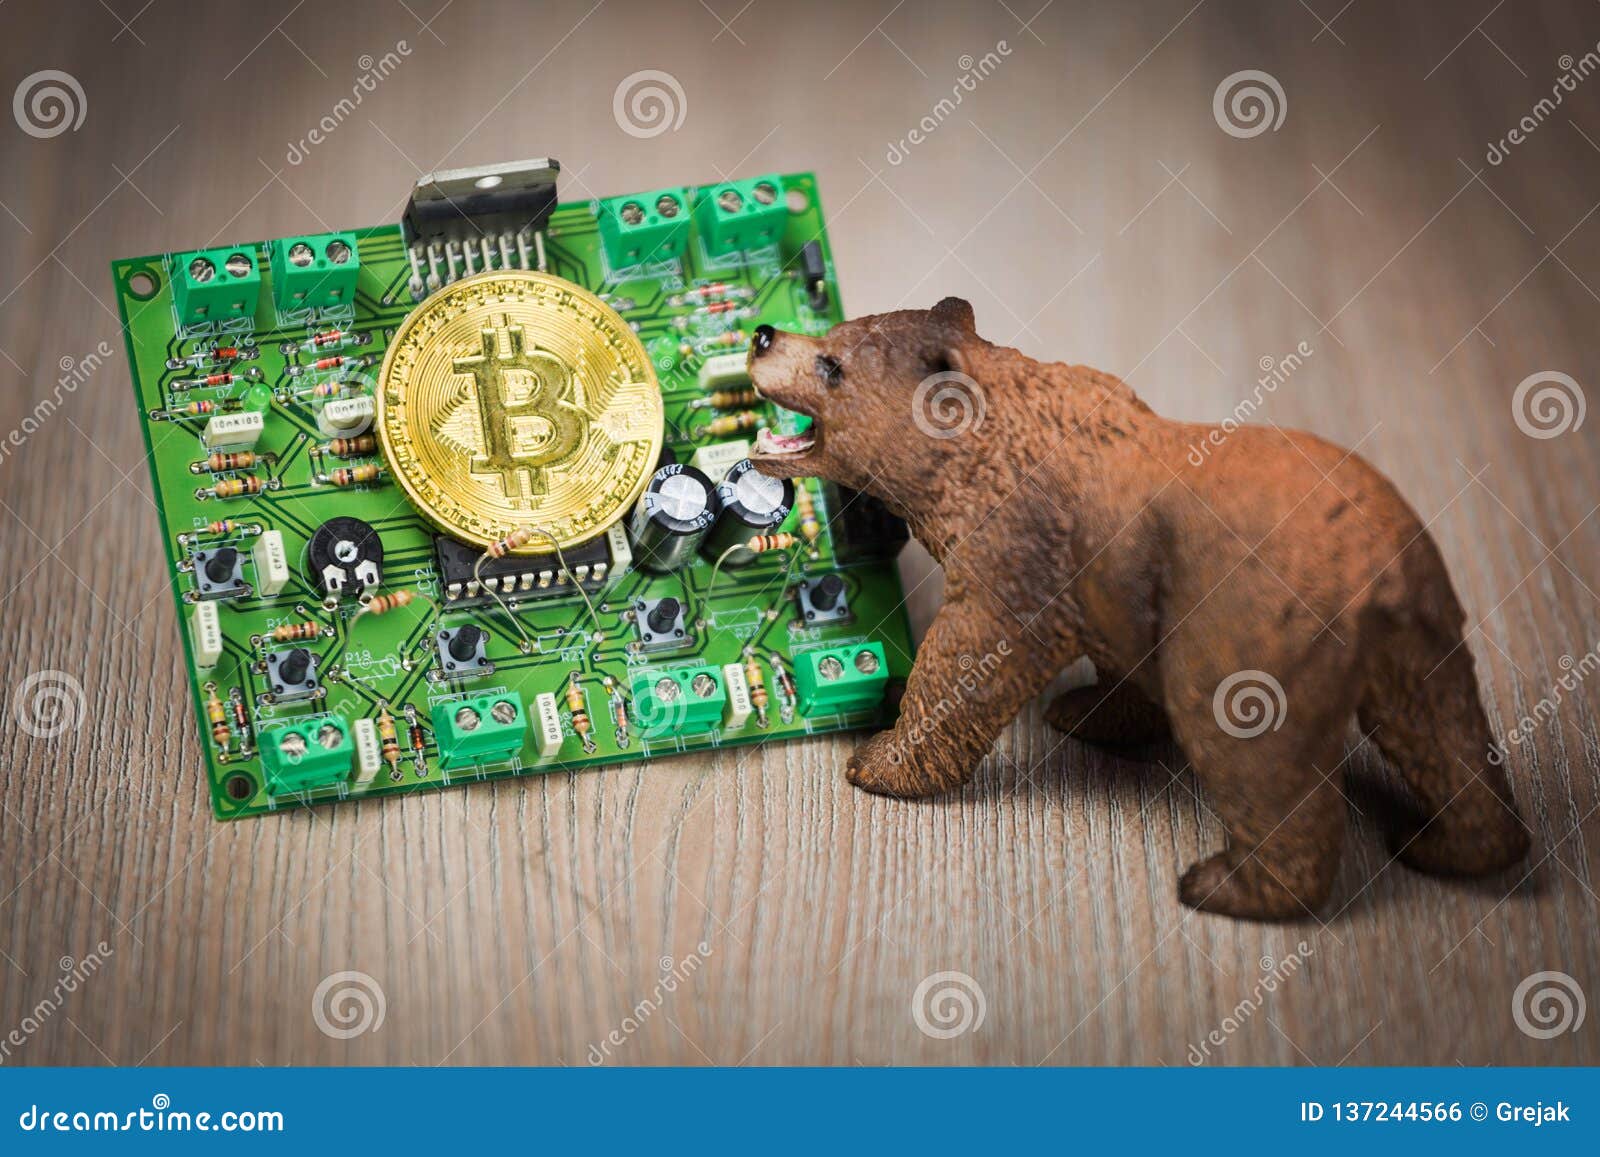 bear market bitcoin